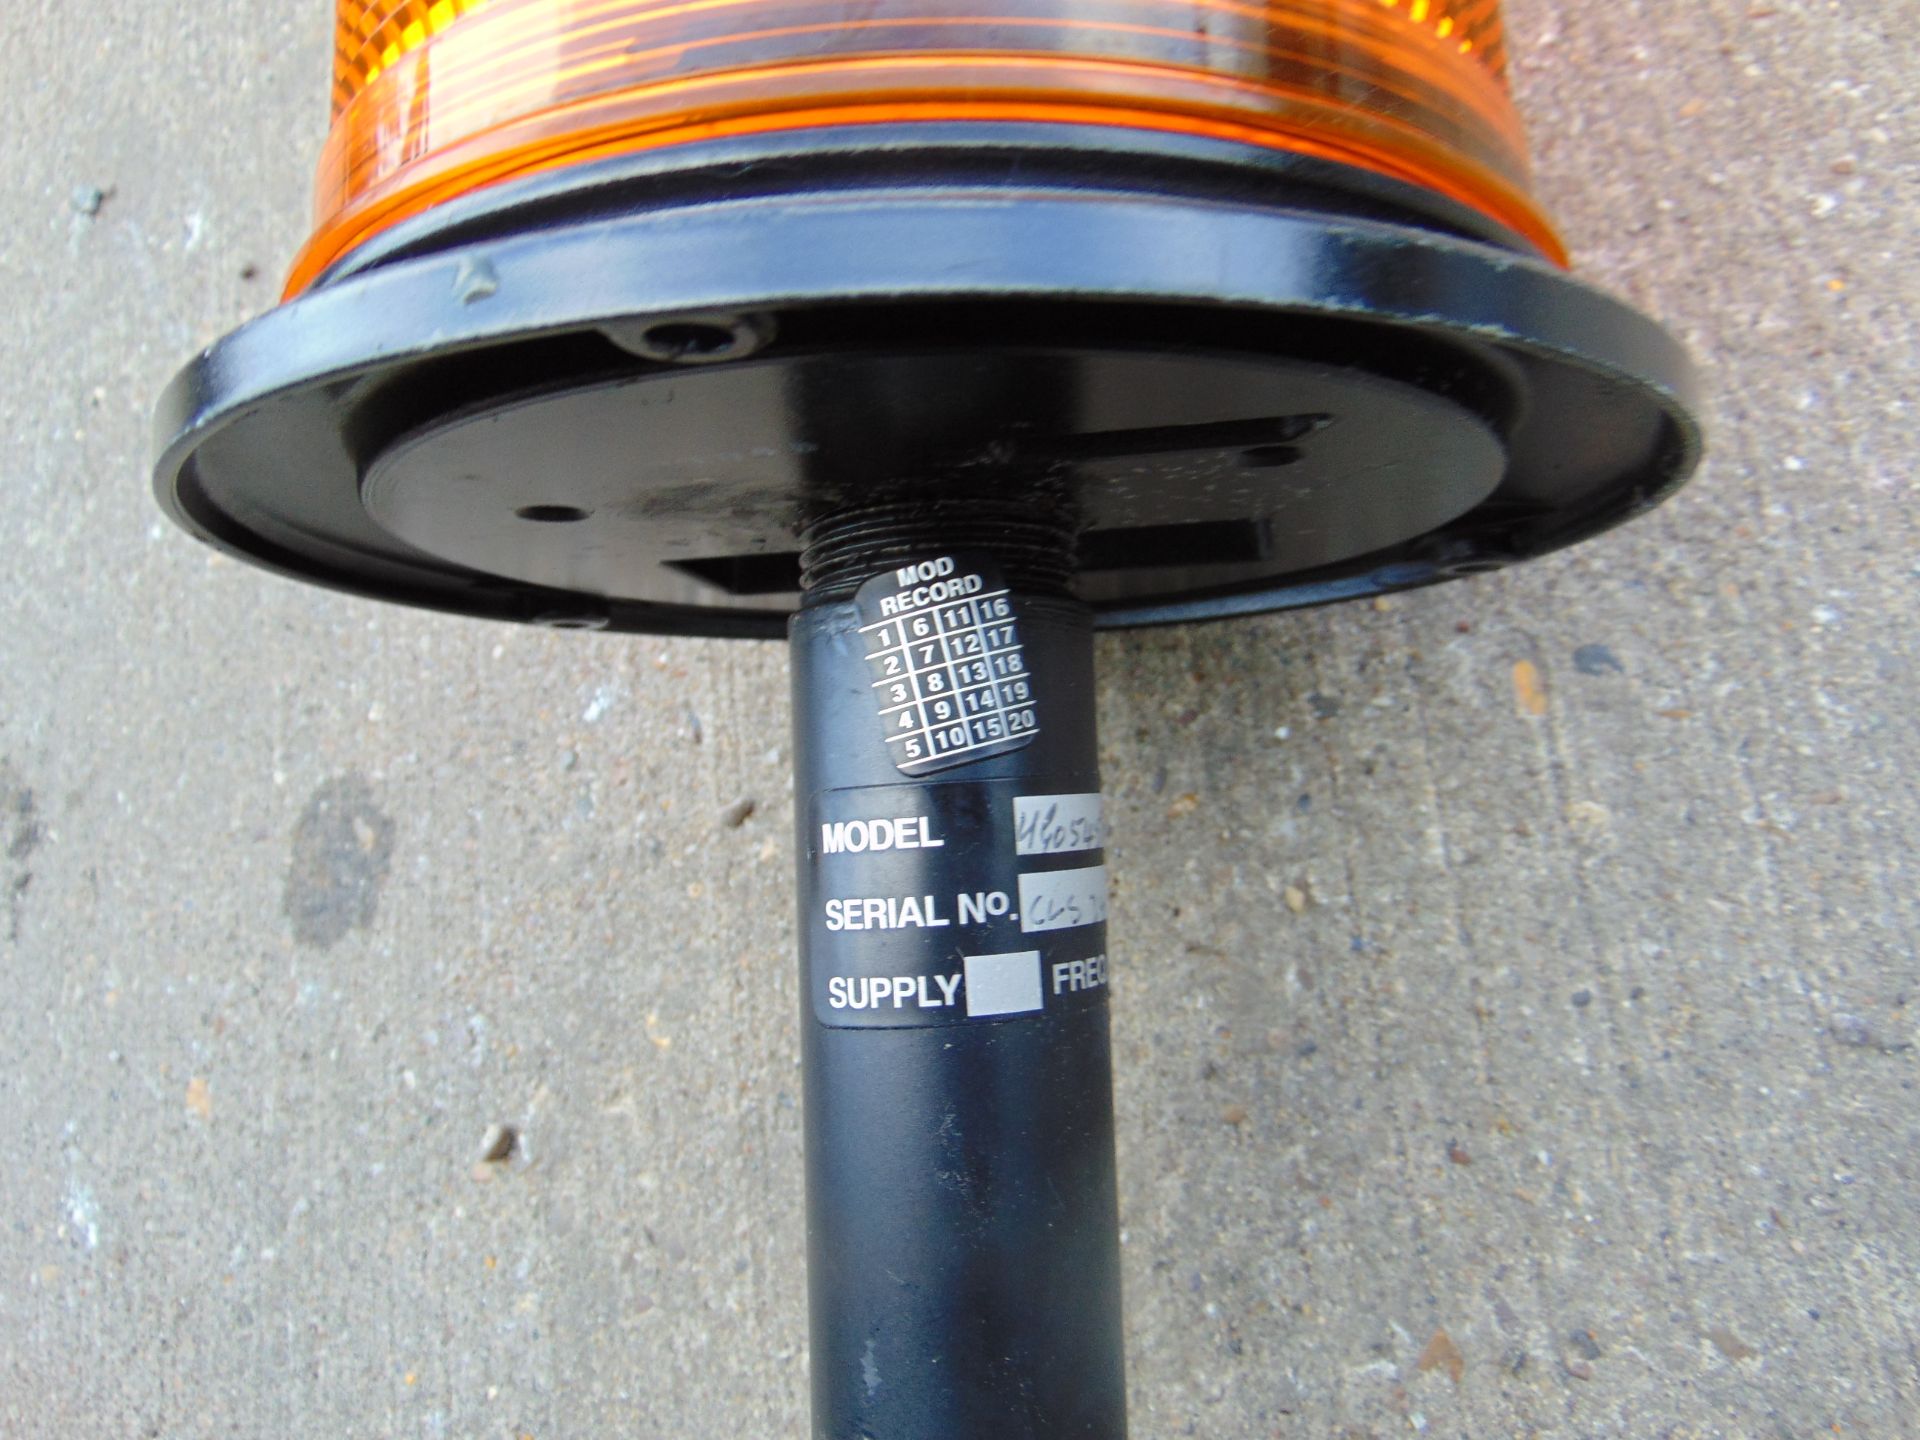 Unused Vehicle Amber flashing beacon - Image 3 of 4